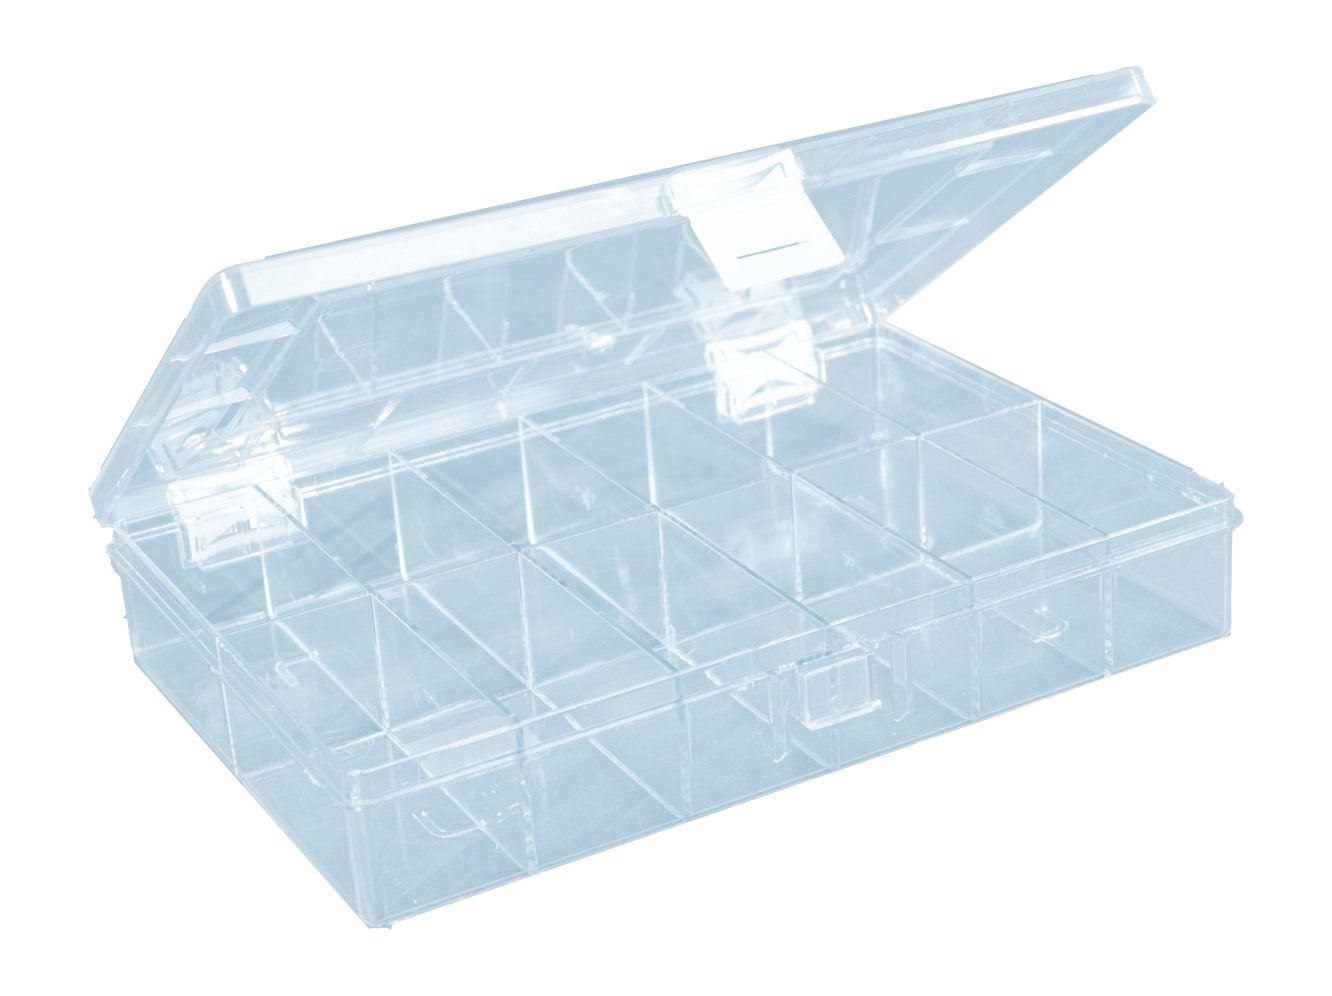 hünersdorff Sortimentskasten: stabile Sortierbox (PS-Compact) mit fester Fachaufteilung (12 Fächer), Sortierkasten-Maße: T170 x B250 x H46 mm, Made in Germany, glasklar, 613700, 12, Transparent von hünersdorff